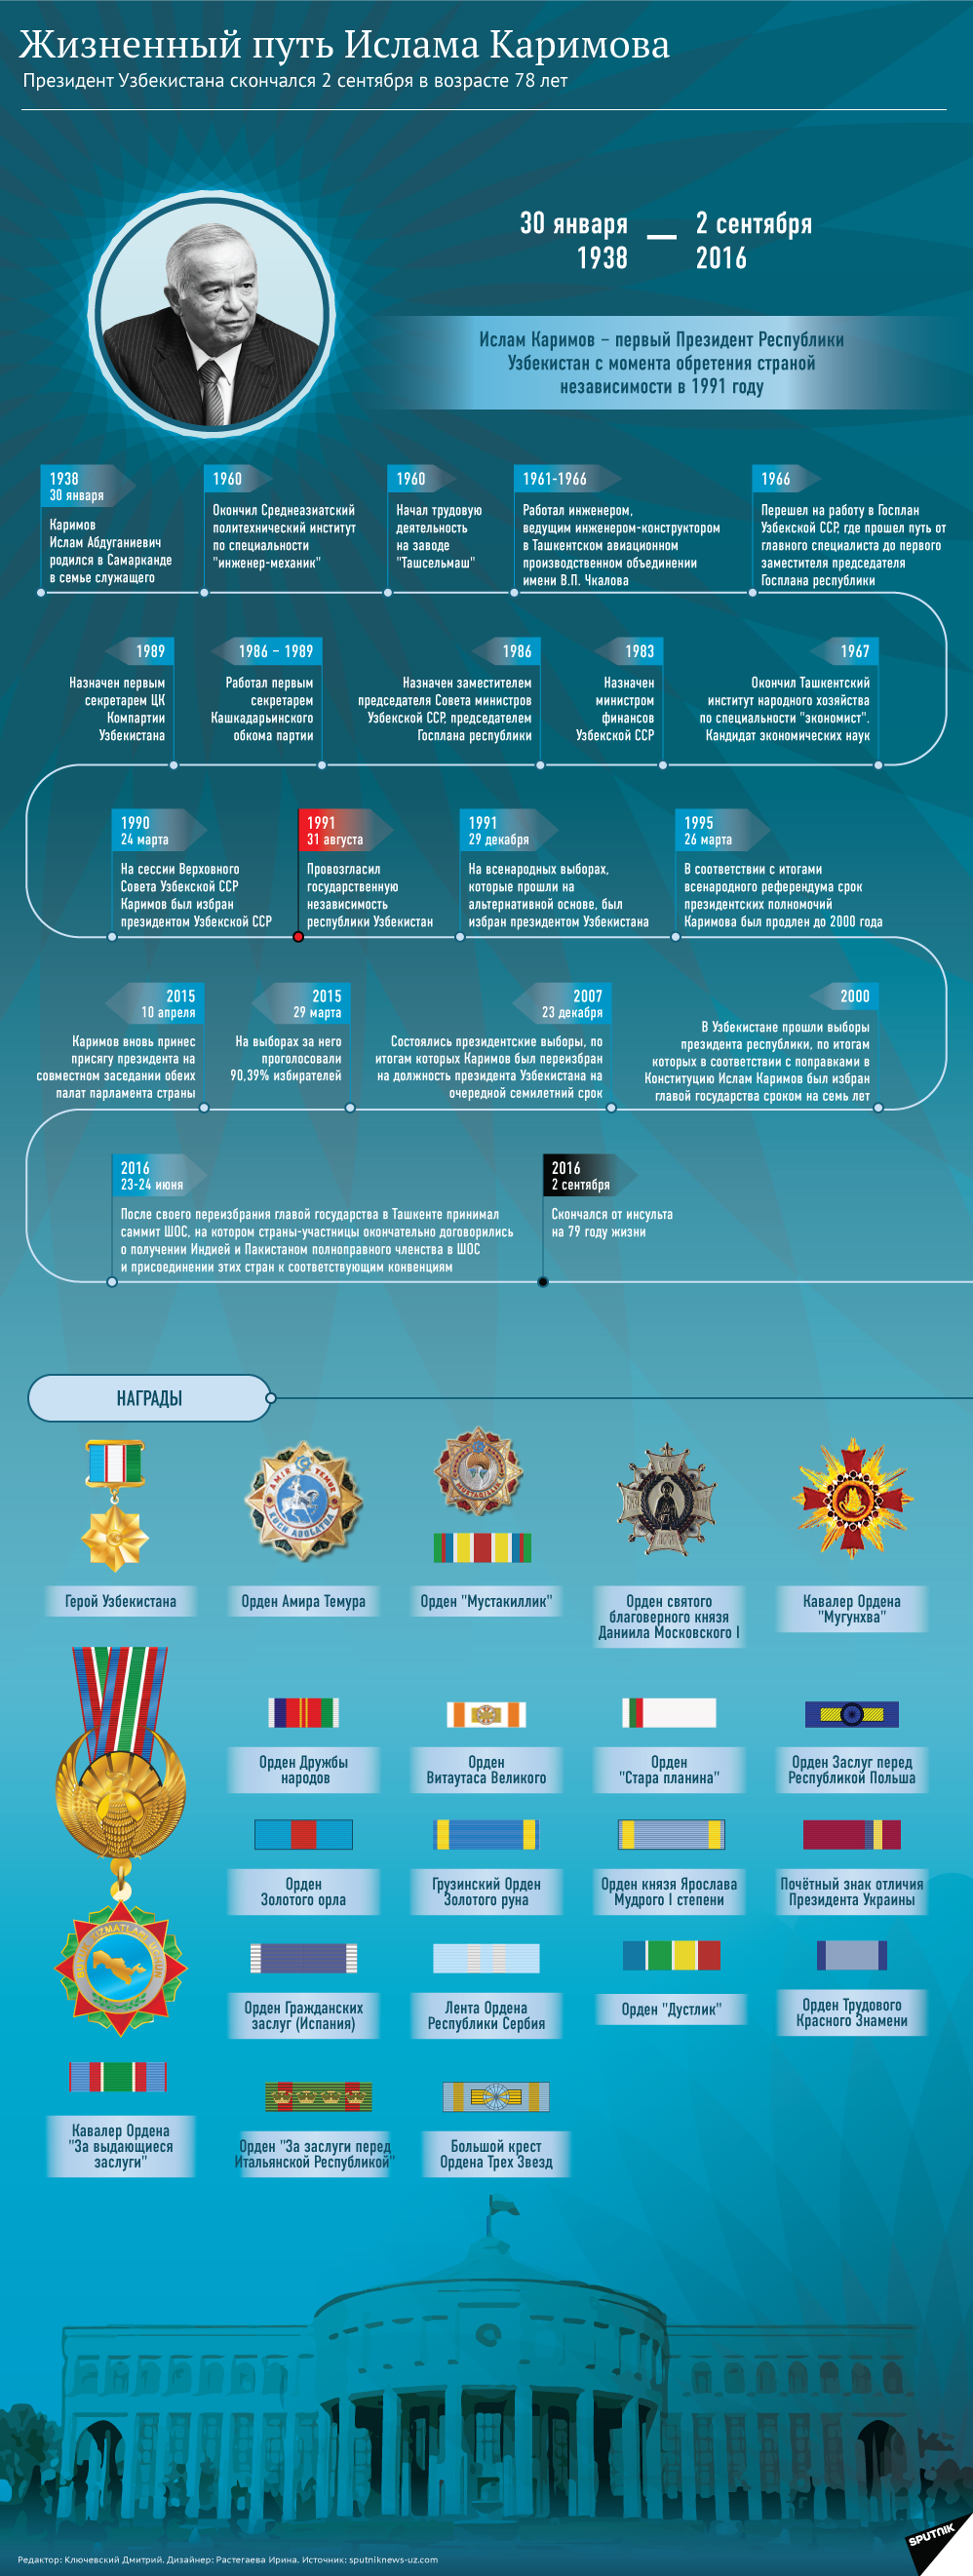 Жизненный путь Ислама Каримова. Инфографика